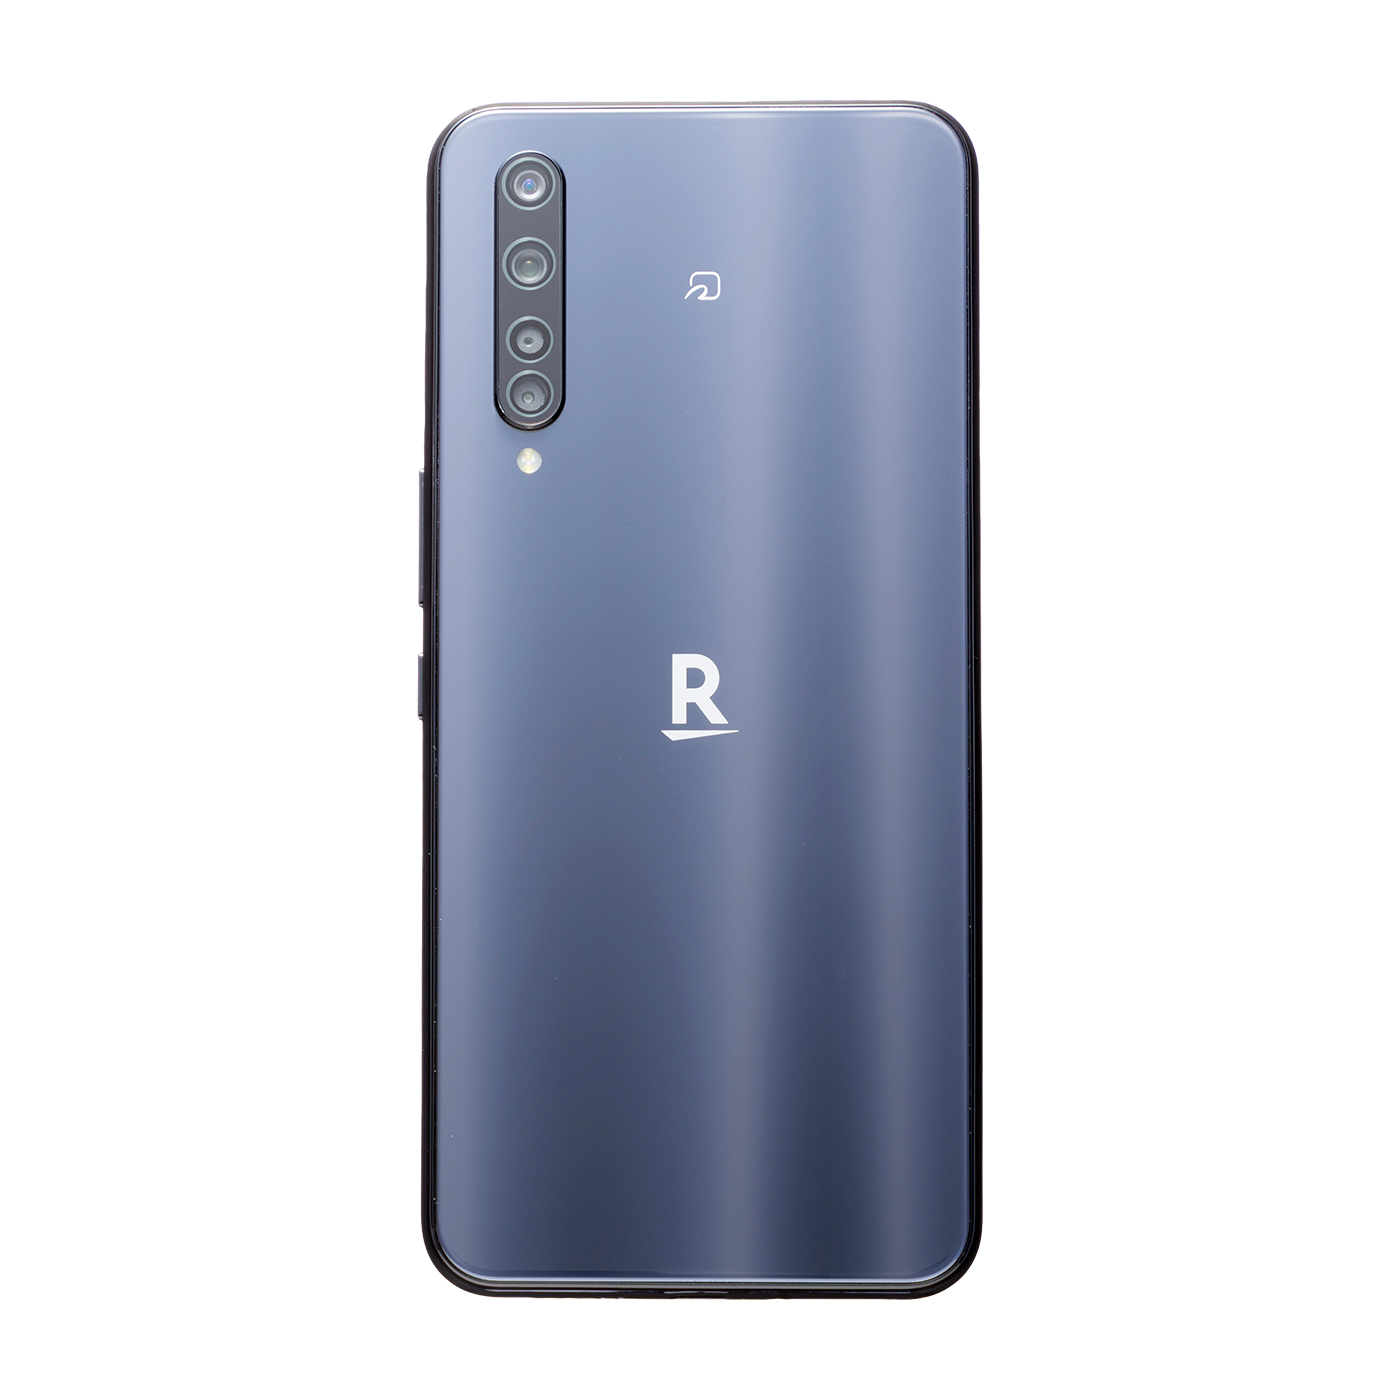 楽天モバイル Rakuten 楽天BIG ZR01 ホワイト 未使用新品 - スマートフォン本体